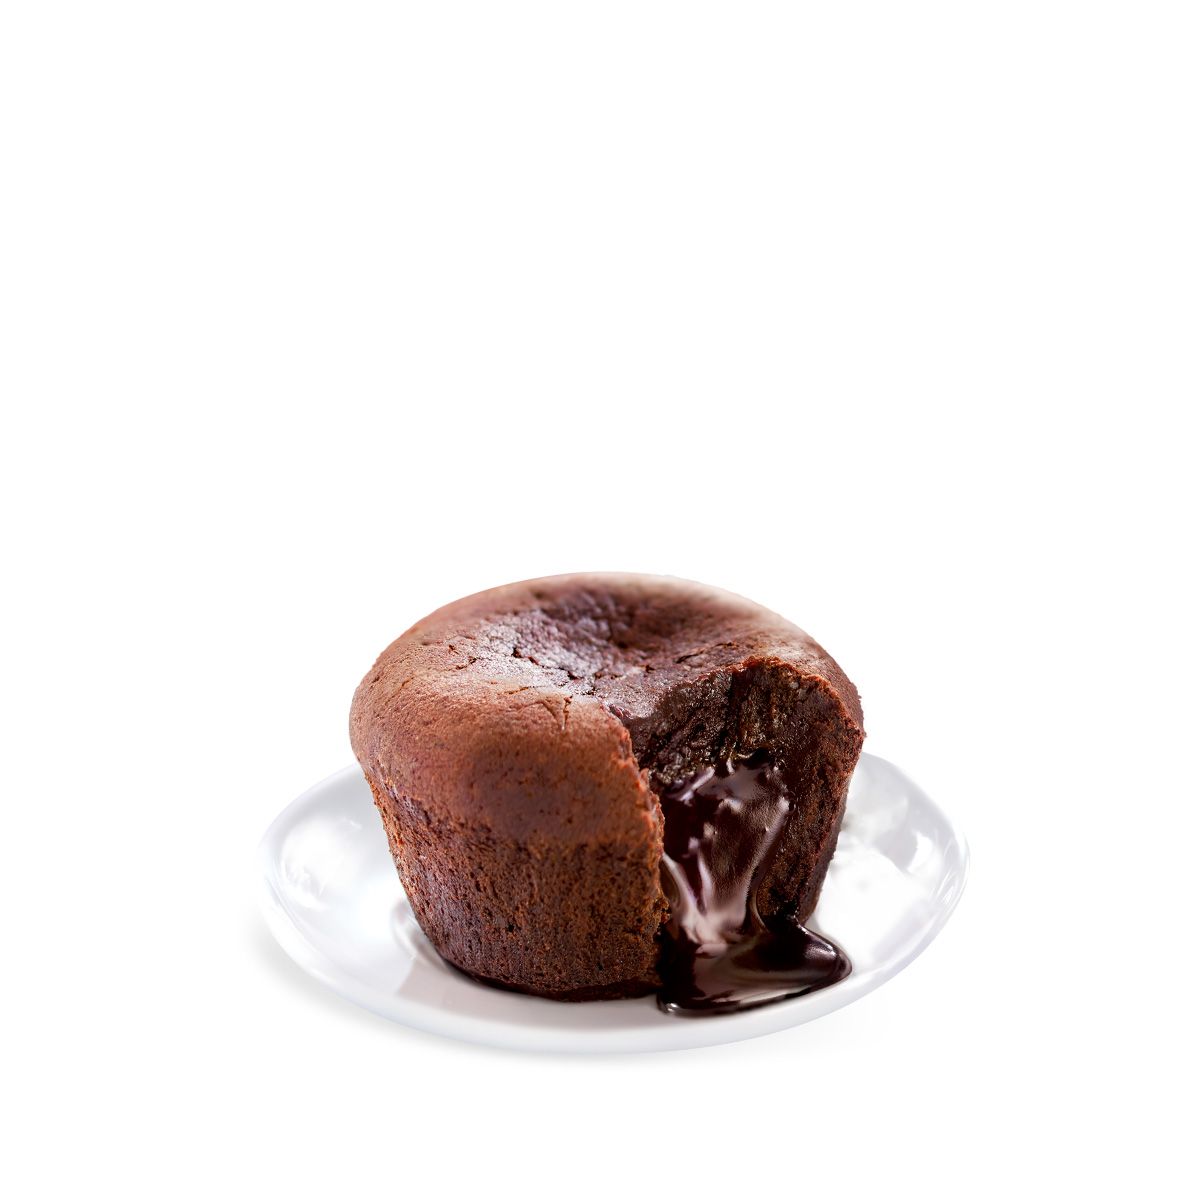 Schokoladenkuchen mit flüssigem Herz 2 x 80 g - Desserts - Desserts ...